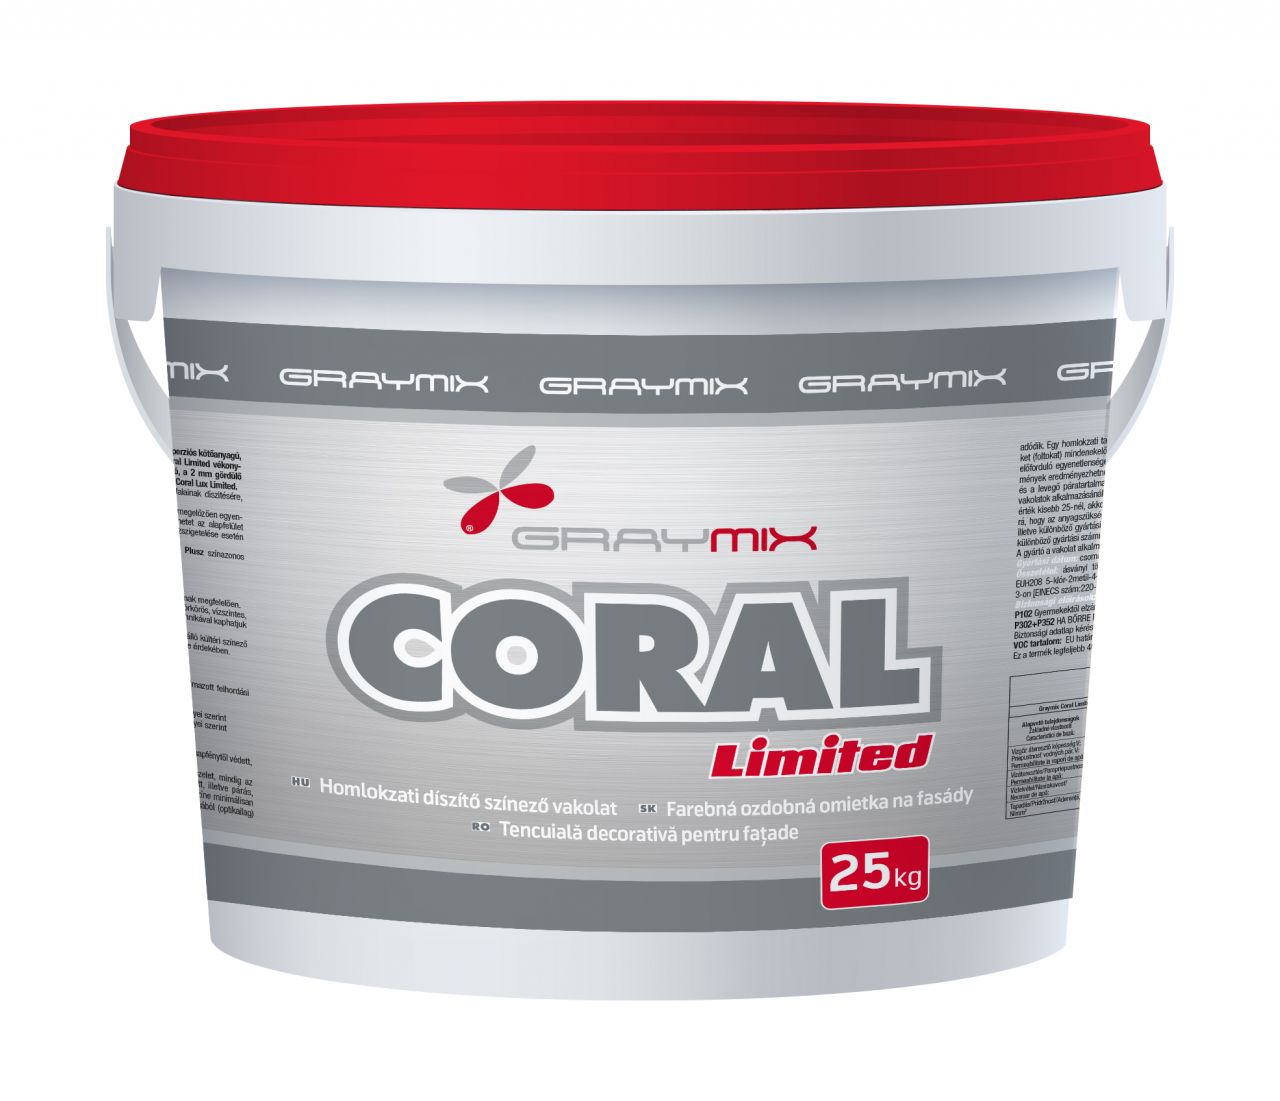 Graymix Coral Lux Limited kapart 1,5 mm-es vékonyvakolat 120 vagy 60 színben 25kg/vödör